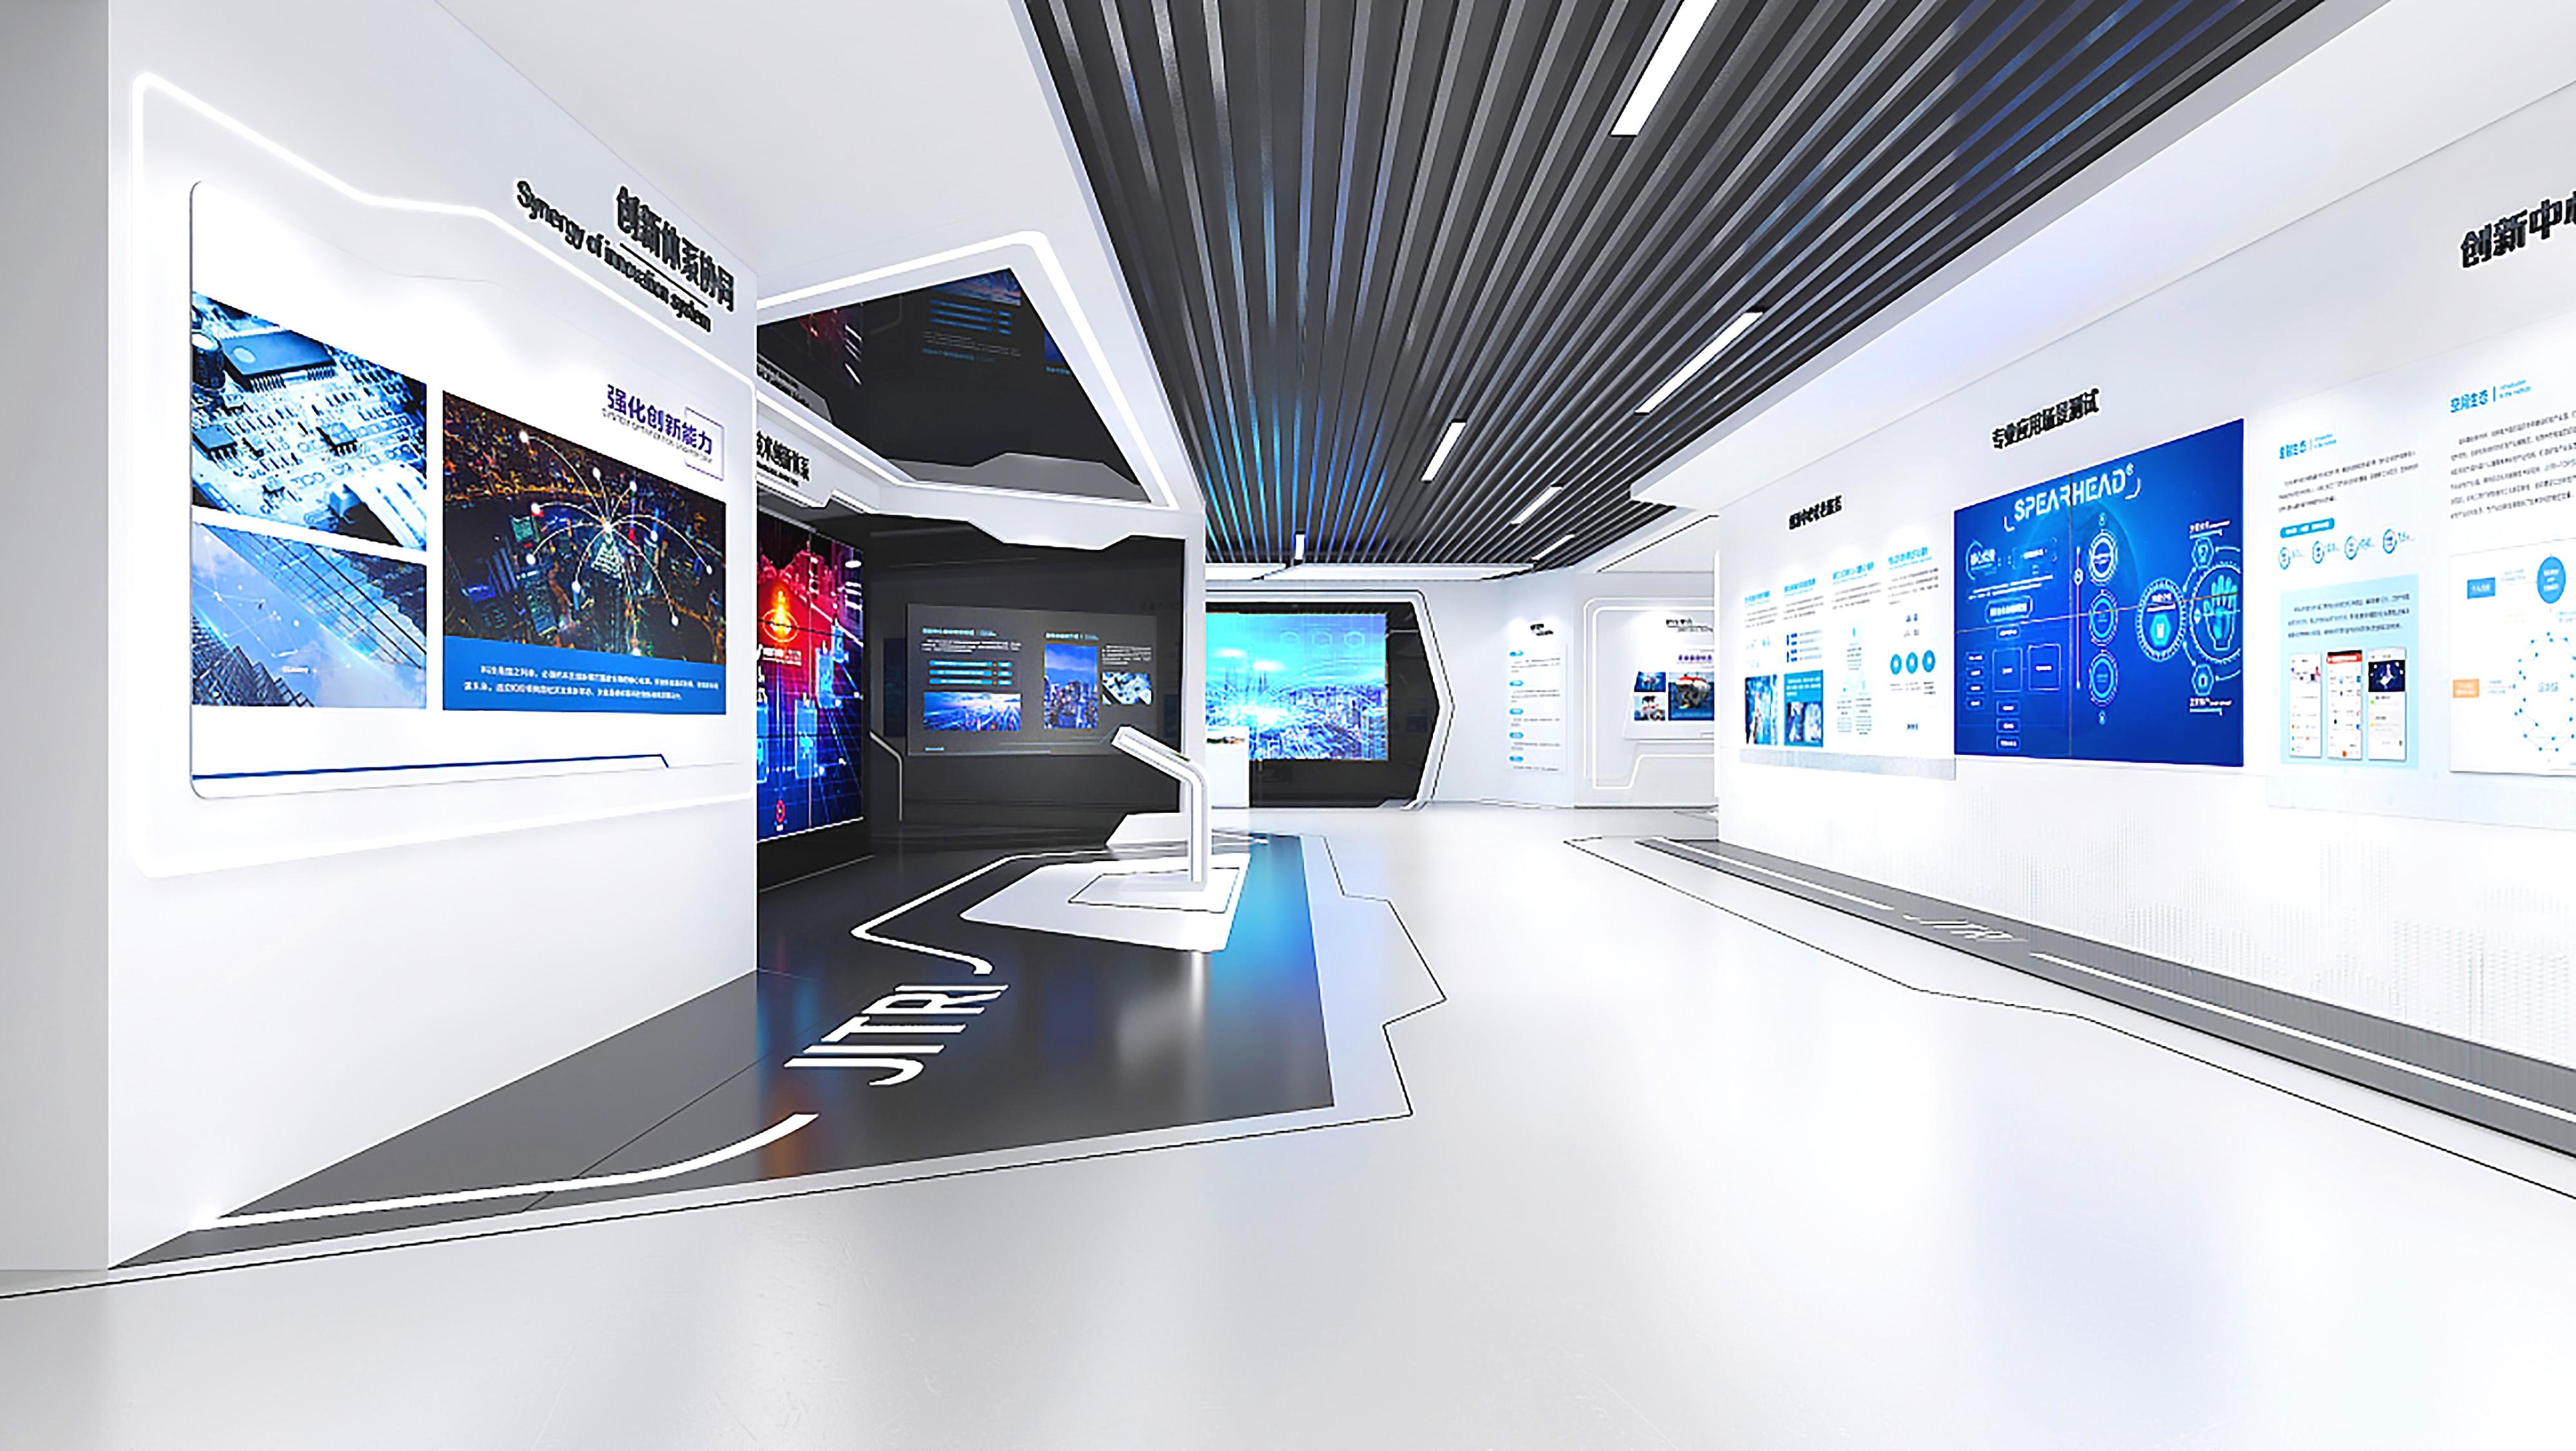 这是一间现代风格的展览厅，墙上挂有多个显示屏和信息图表，整体色调以白色和蓝色为主，显得科技感十足。